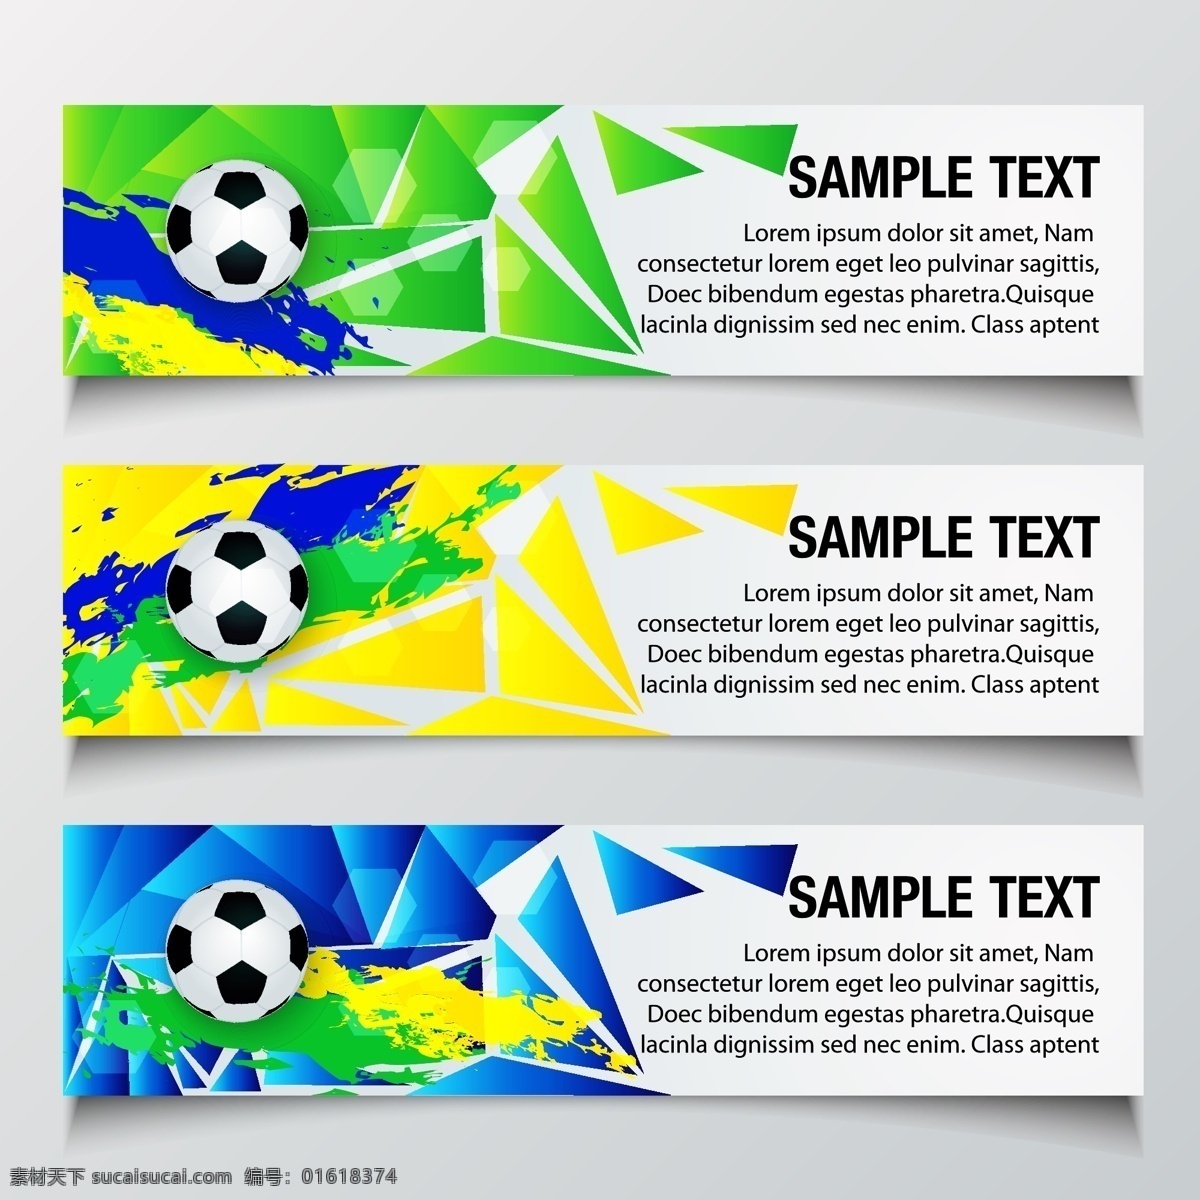 创意 世界杯 主题 模板 巴西世界杯 足球 体育运动 足球模板 时尚模板 足球主题 生活百科 矢量素材 白色